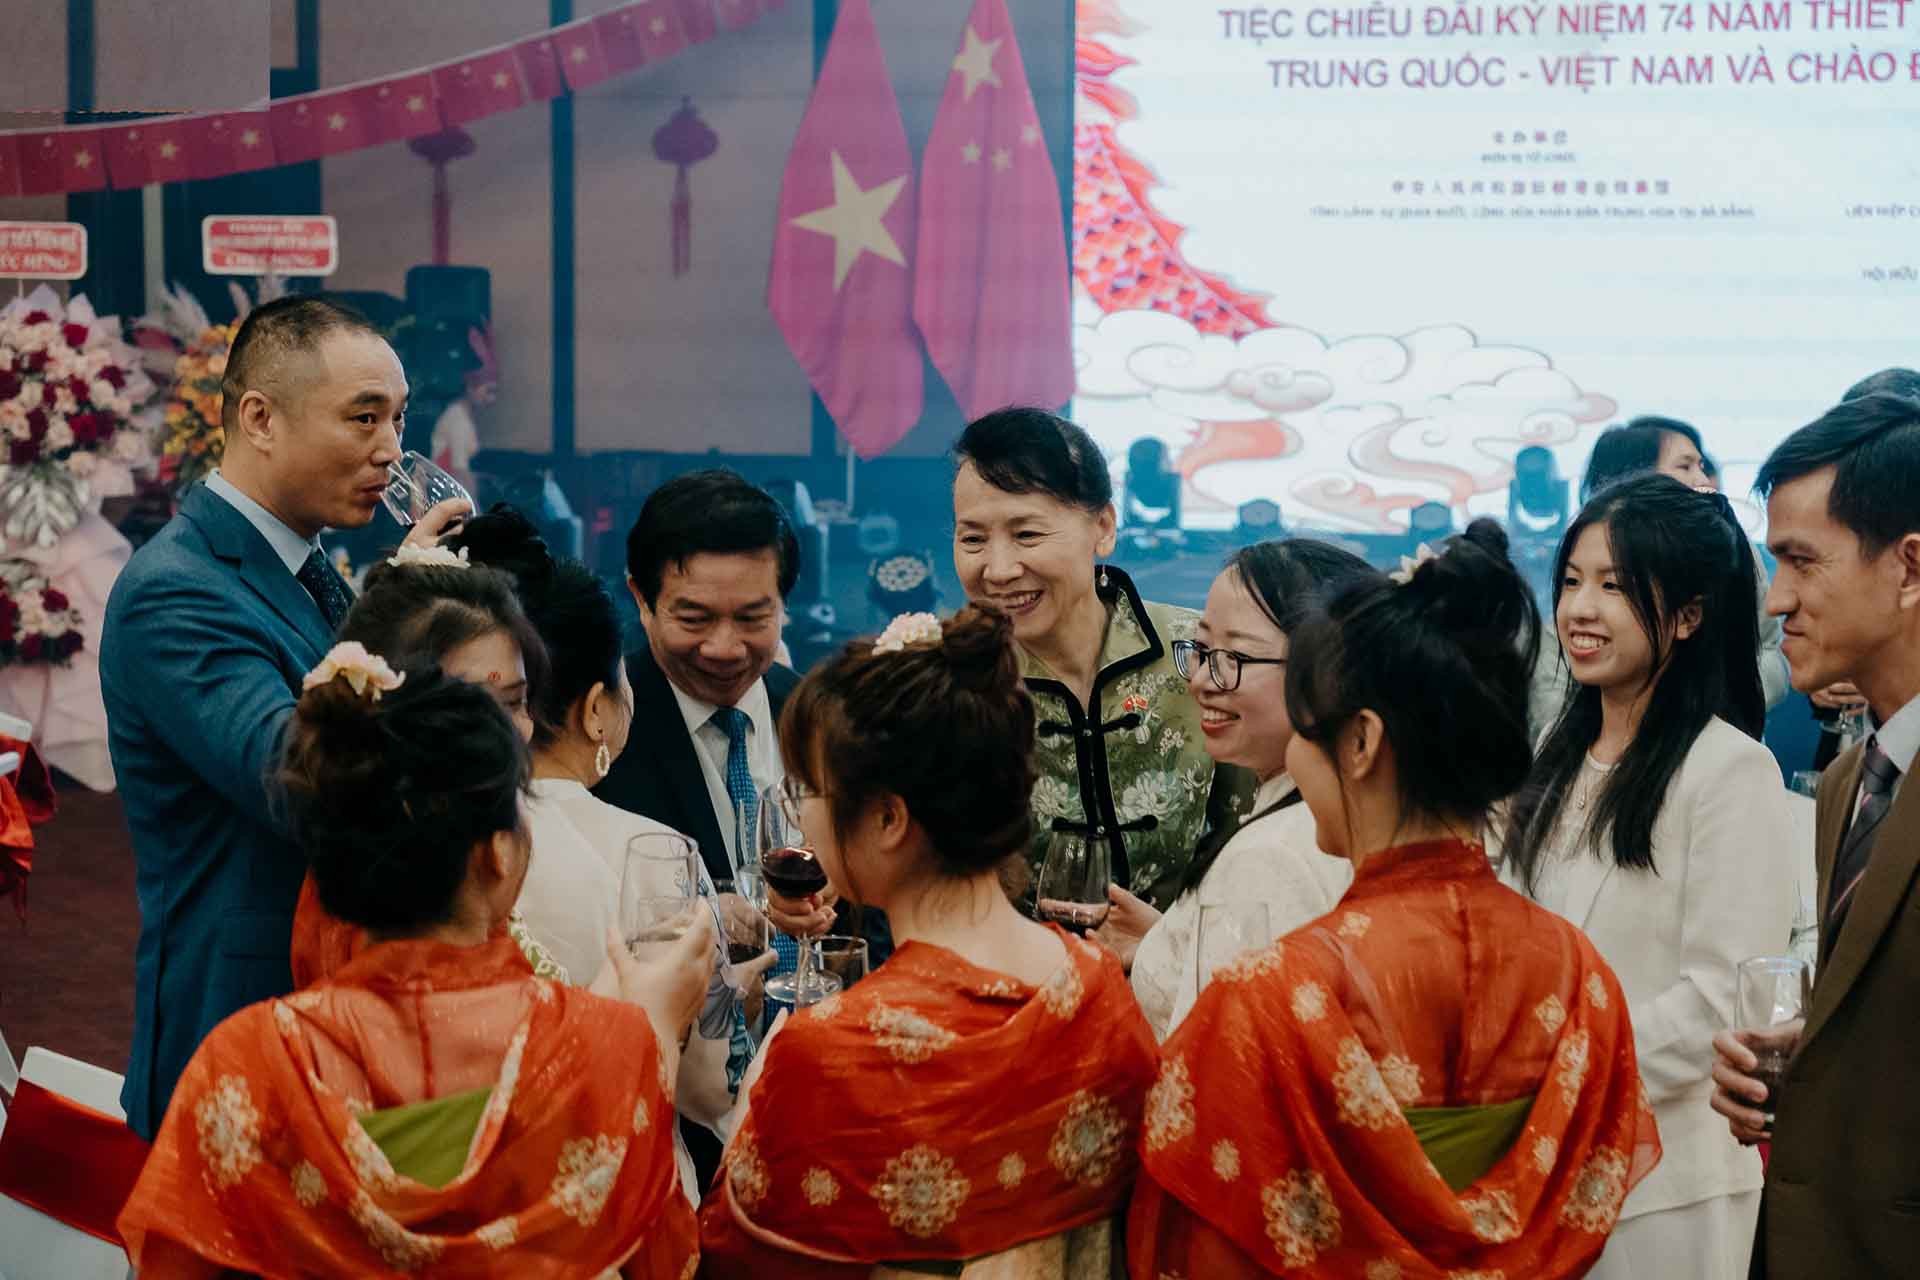 Bà Đổng Bích Du, Tổng lãnh sự Trung Quốc tại Đà Nẵng chúc mừng các khách mời doanh nghiệp đang kinh doanh tại Việt Nam cùng các du học sinh Trung Quốc tại thành phố Đà Nẵng.